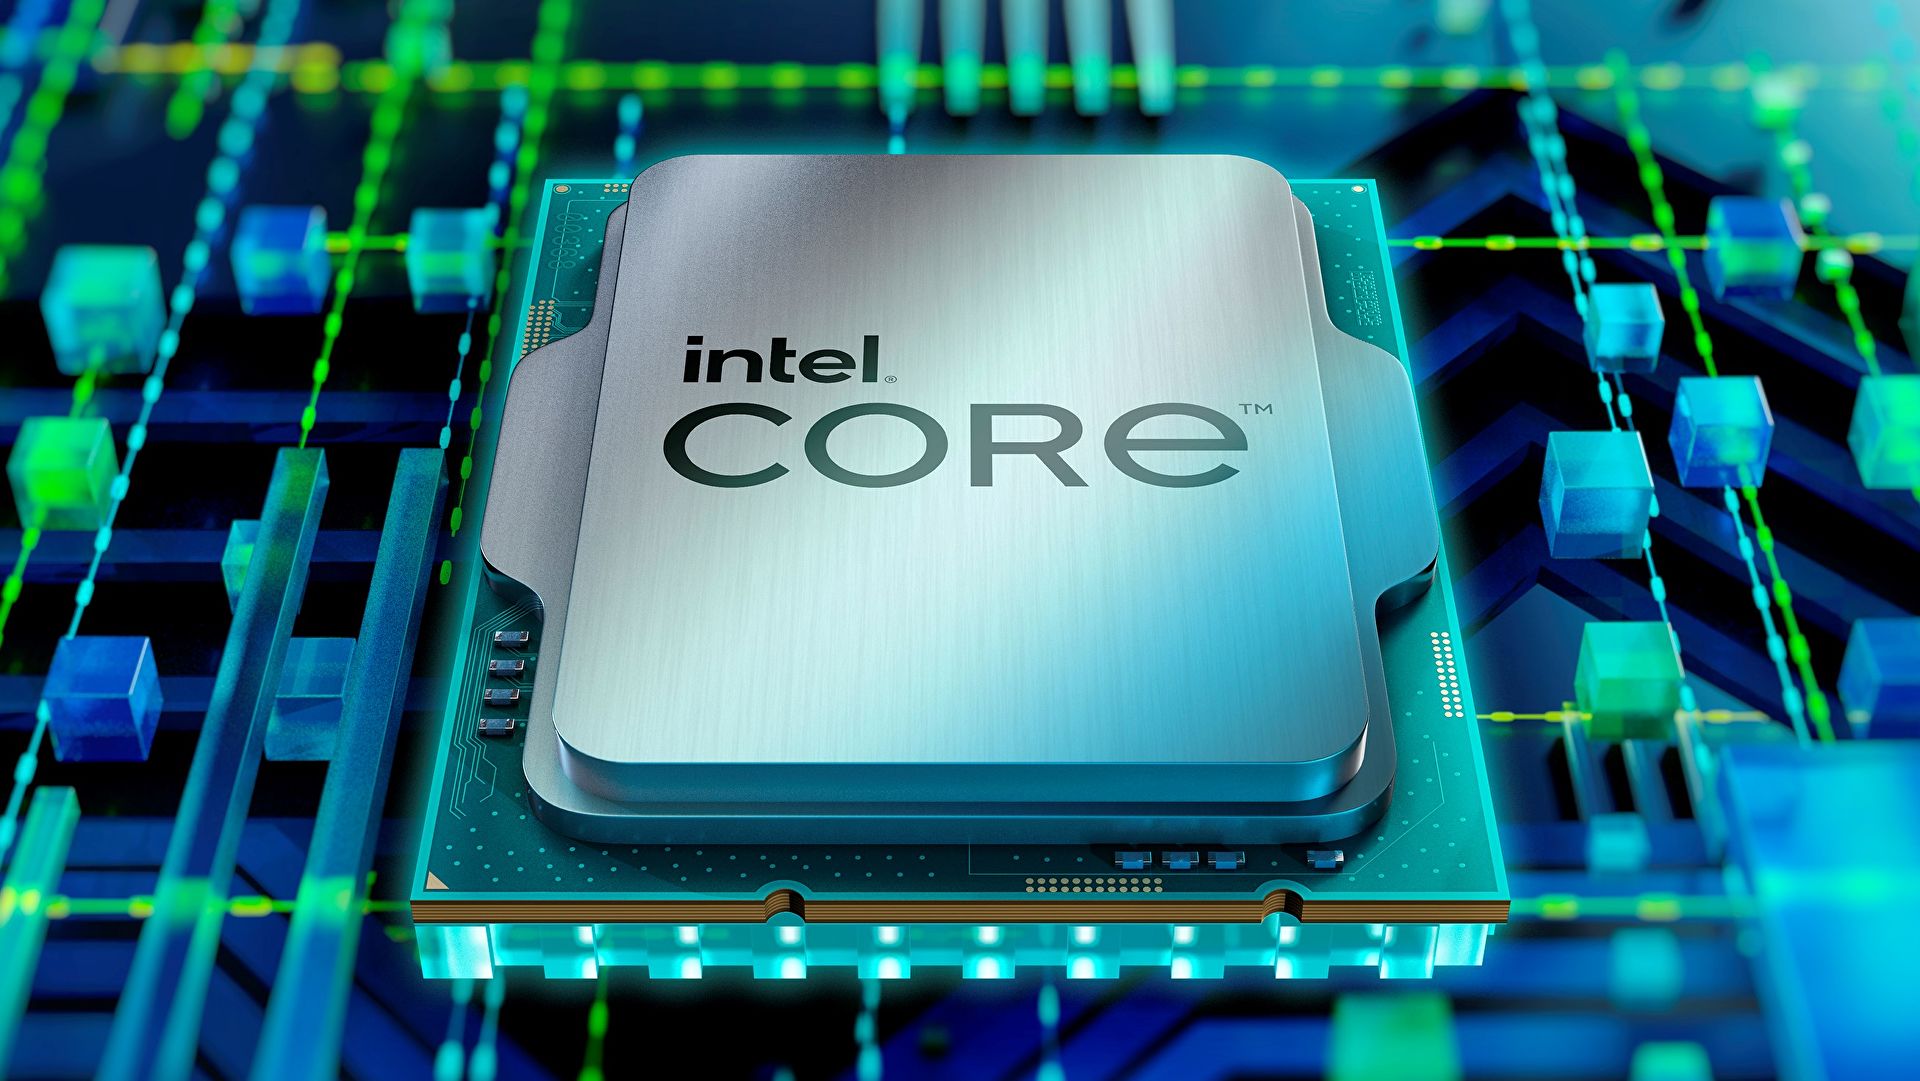 Οι επόμενης γενιάς επεξεργαστές Raptor Lake-S της Intel ενδέχεται να υποστηρίζουν και μνήμη DDR4